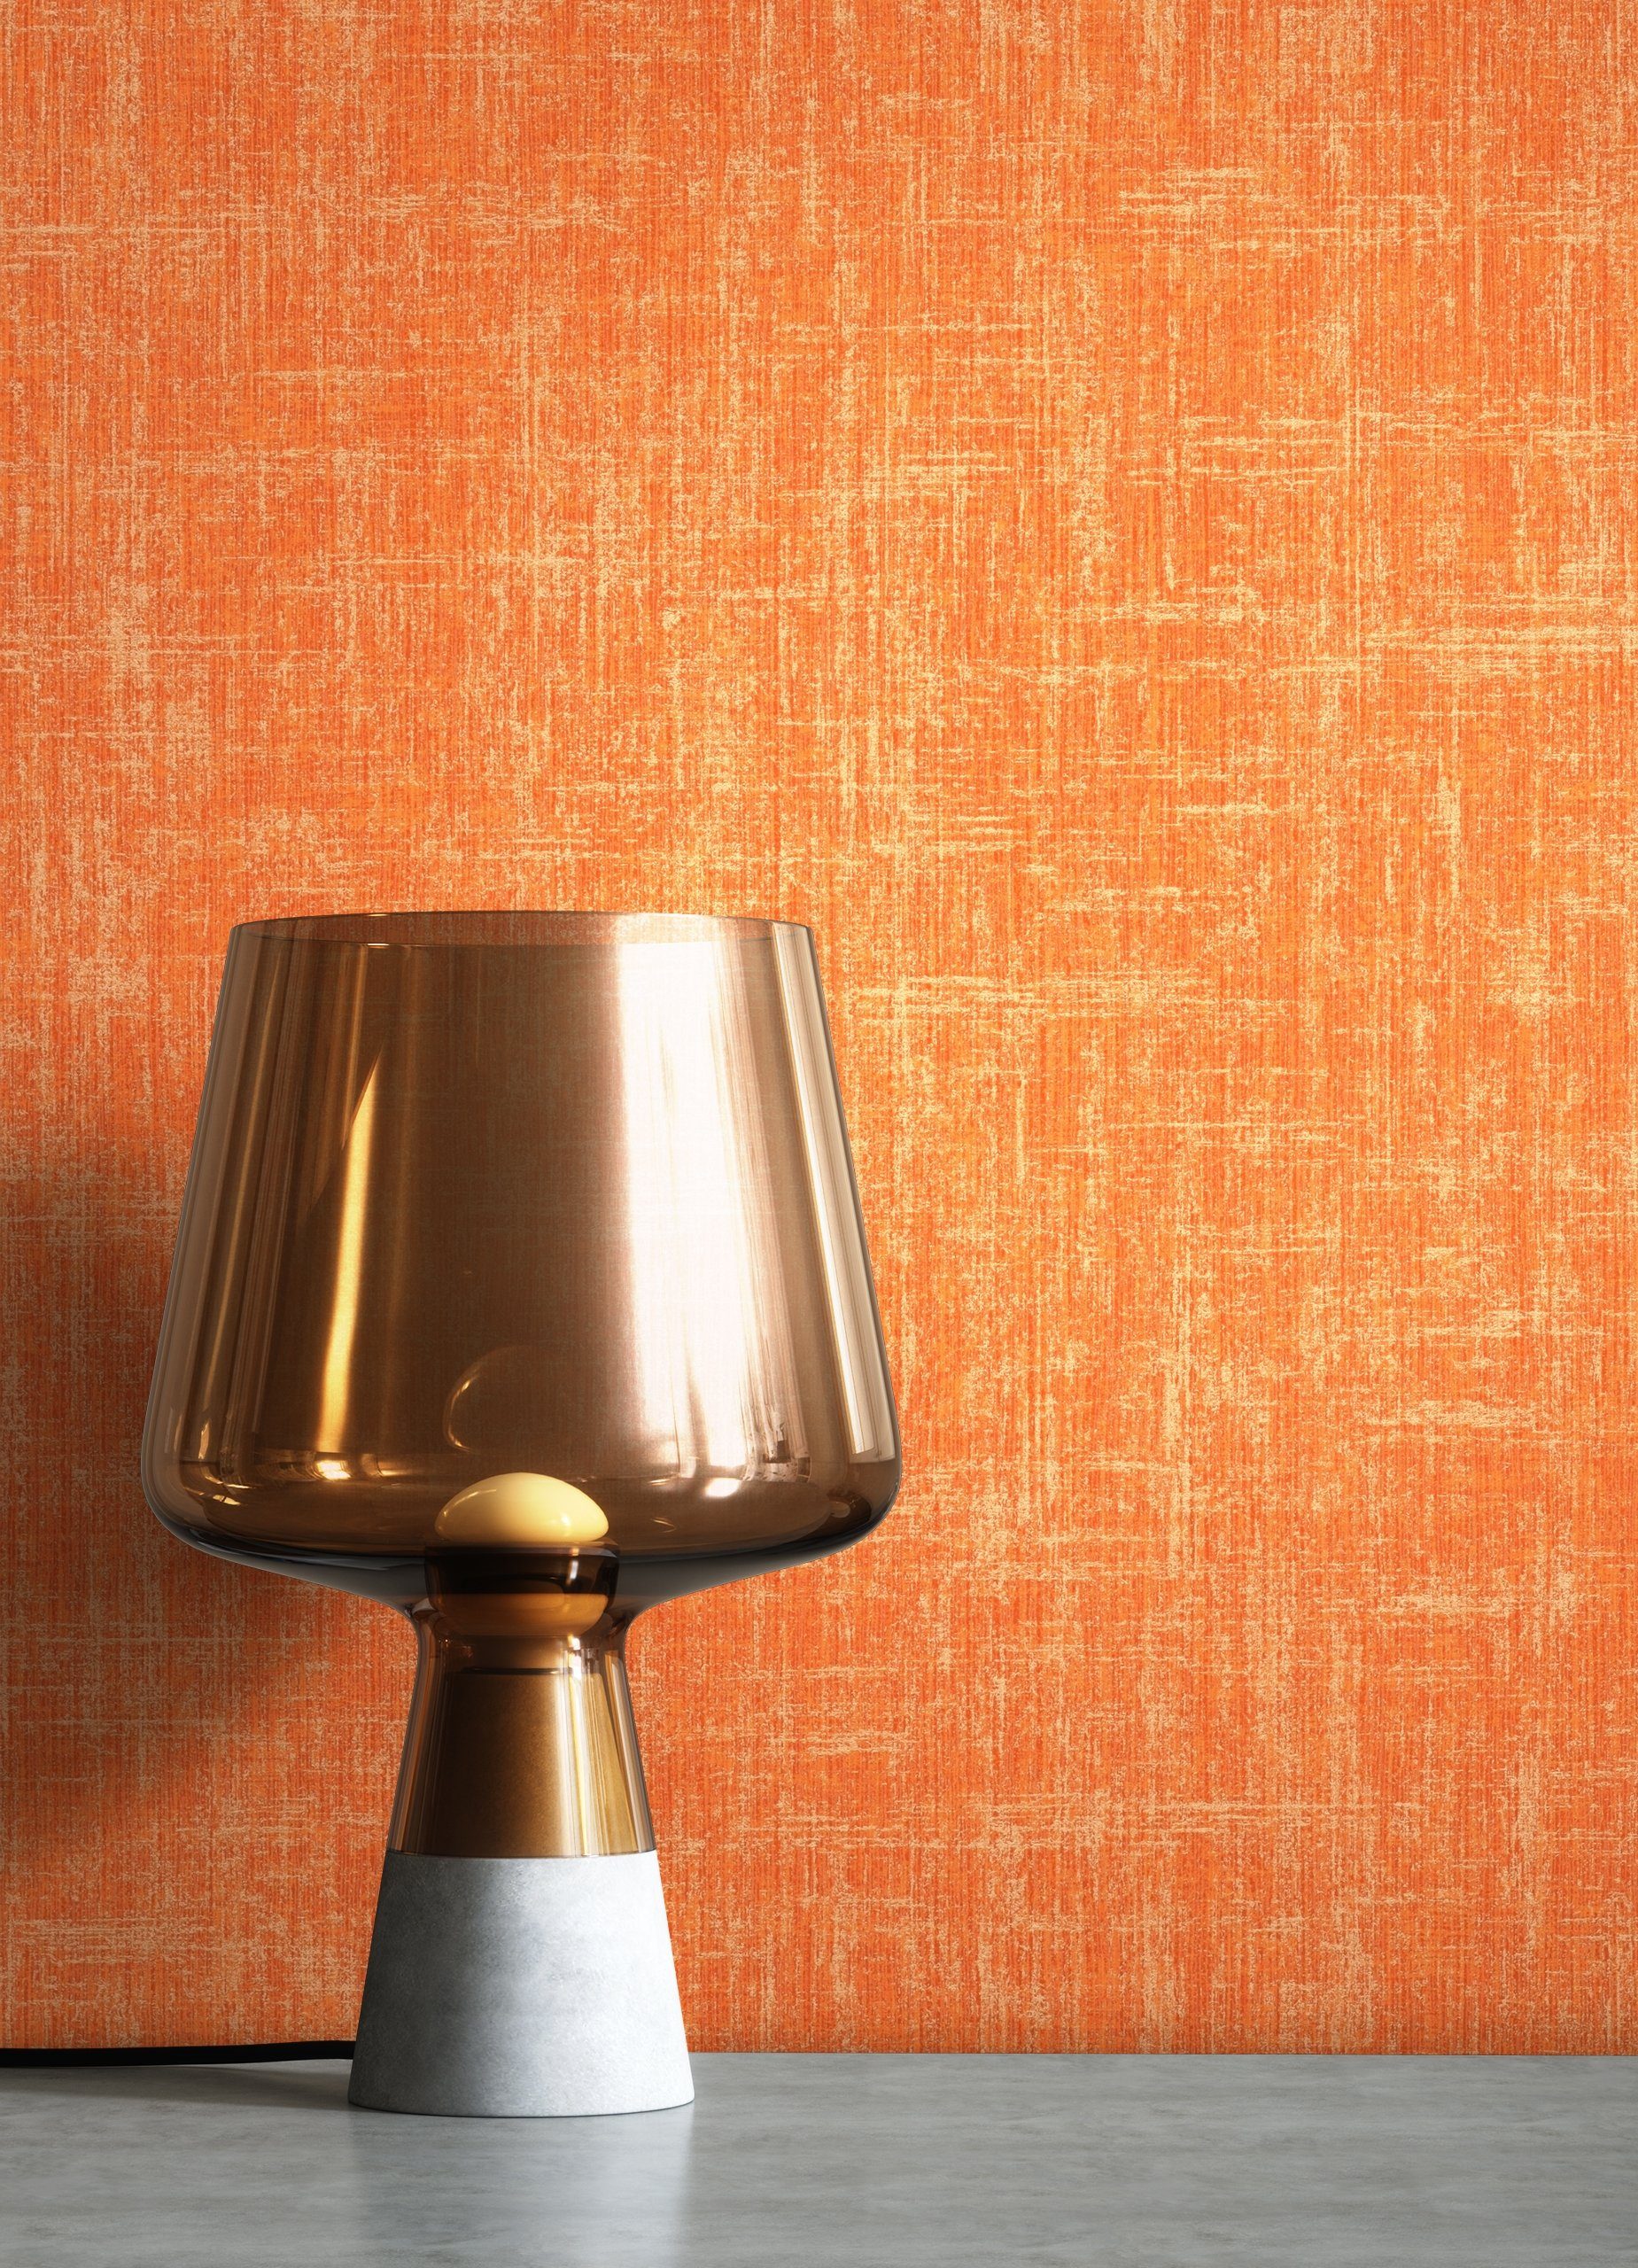 Newroom Vliestapete, Orange Tapete Uni Leicht Glänzend - Unitapete Gold Modern Klassik Einfarbig Leinenoptik für Wohnzimmer Schlafzimmer Flur